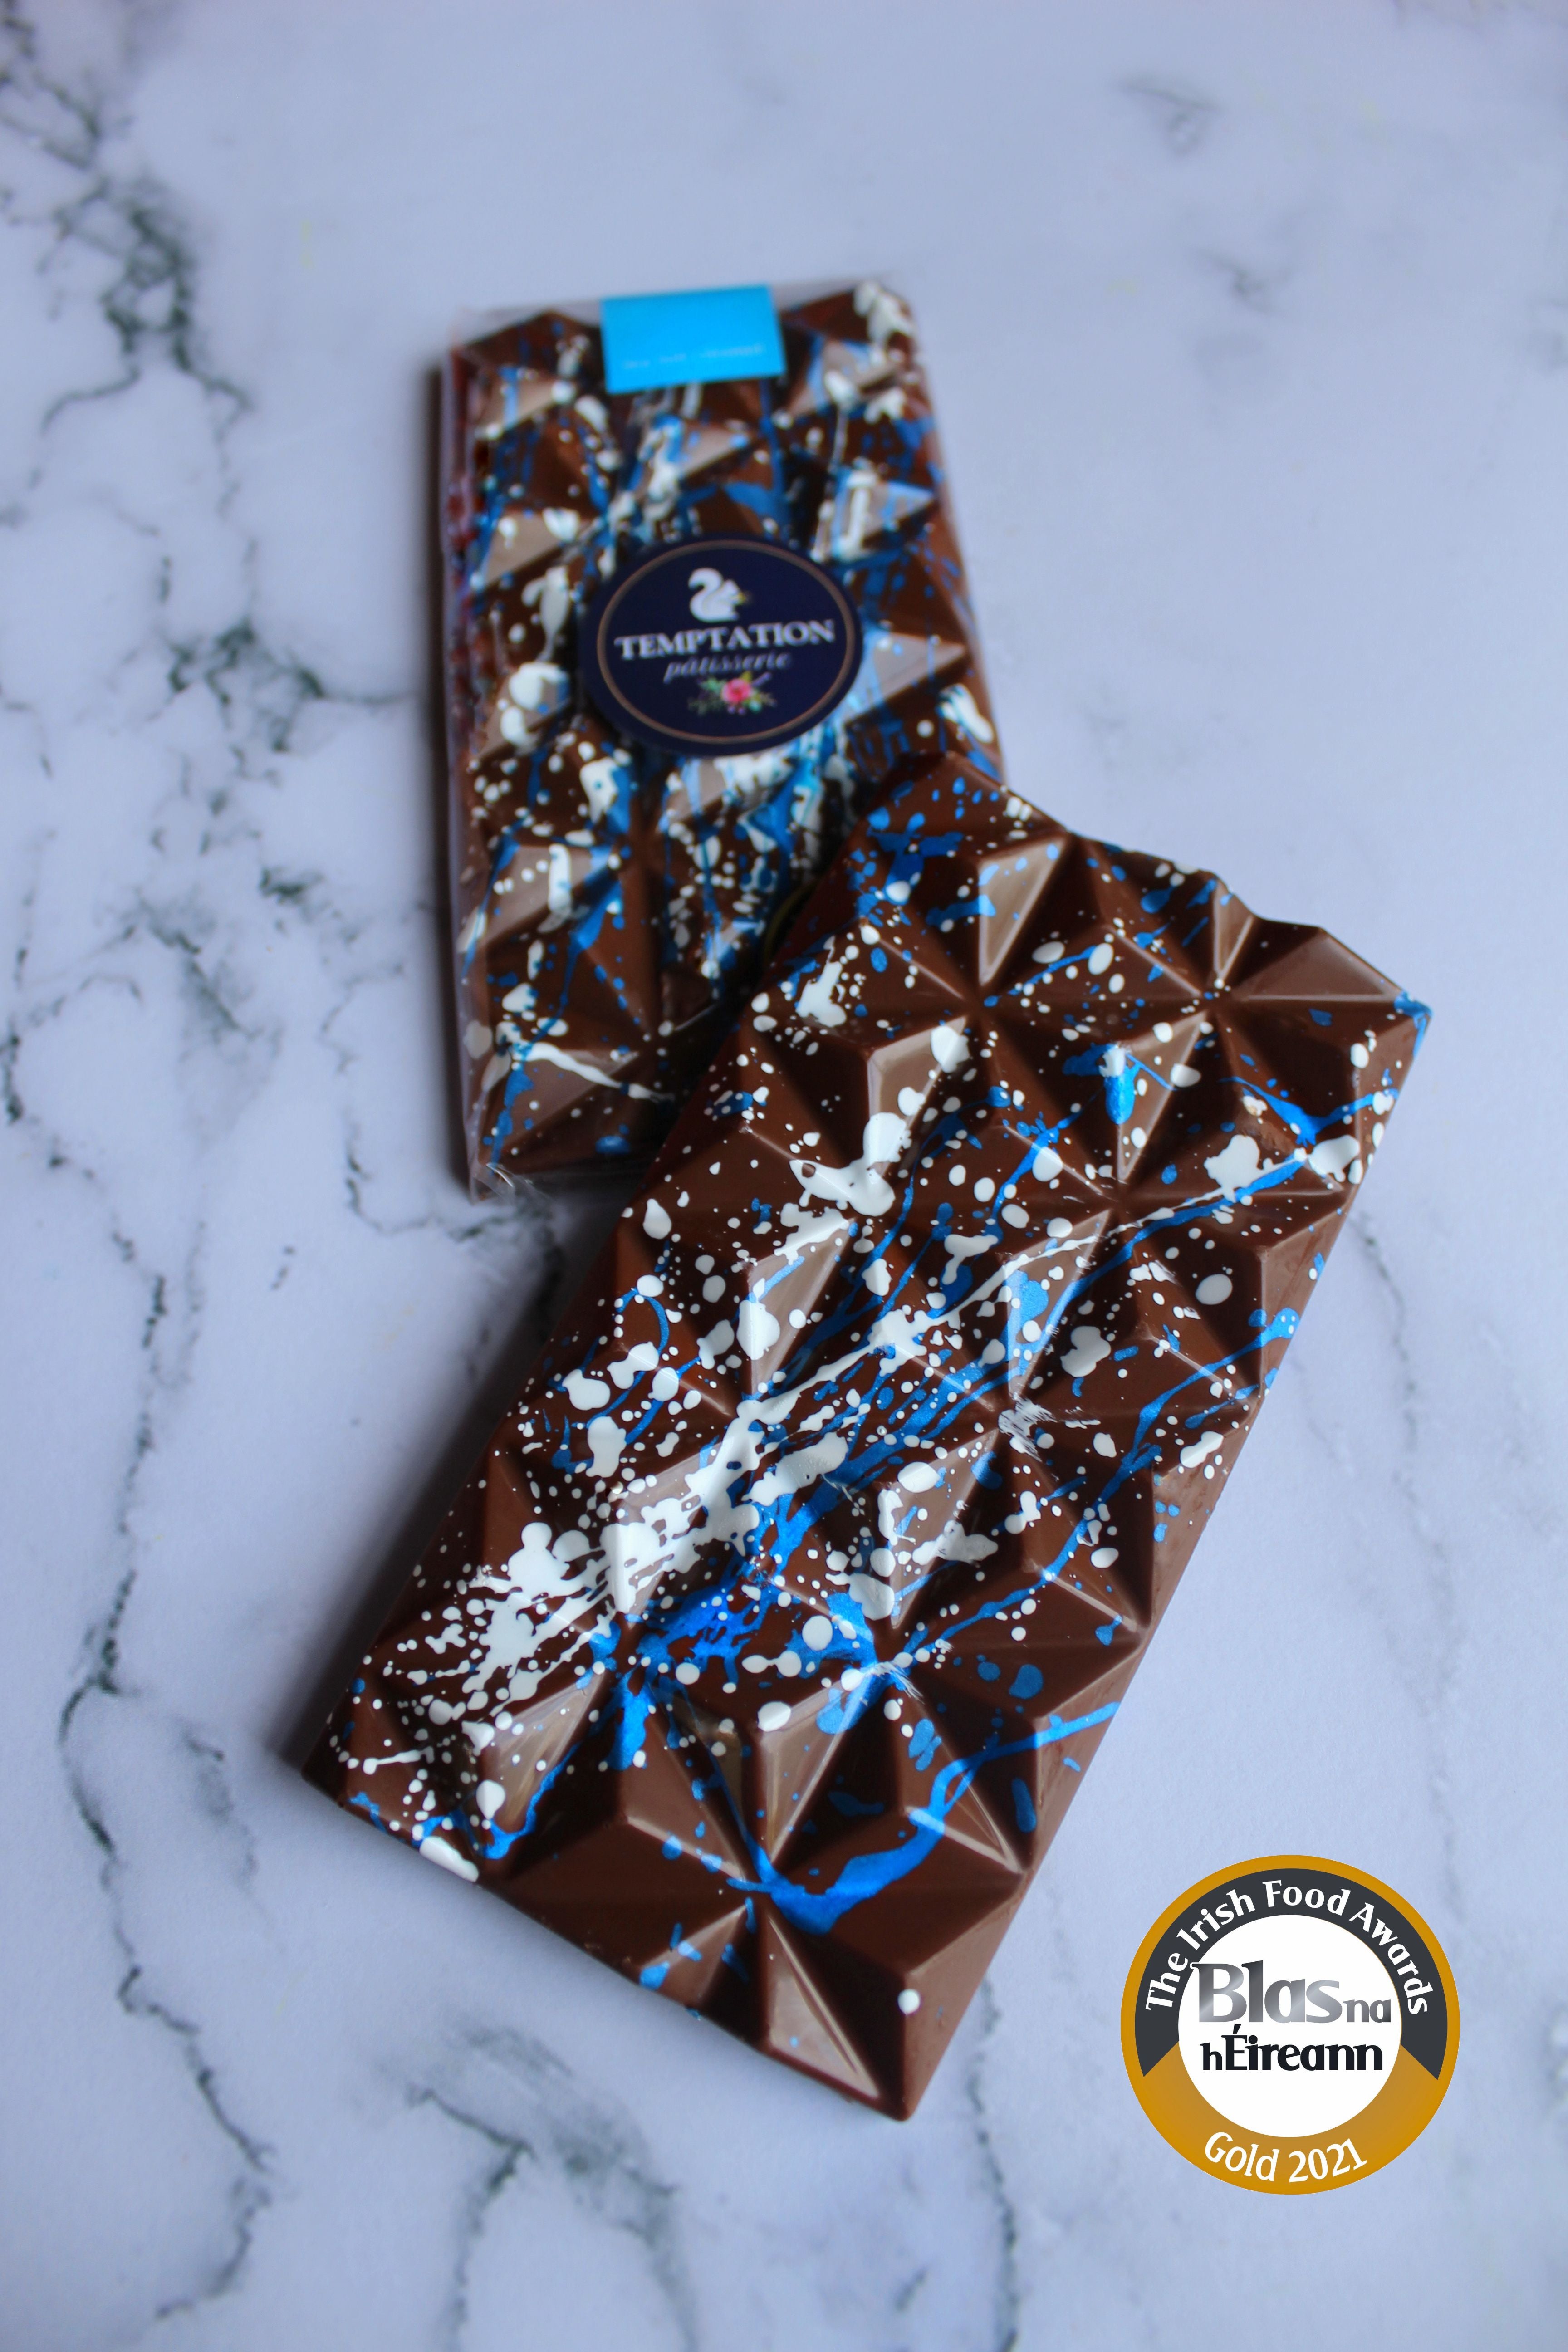 artisanal-chocolate-ireland-handmade-chocolate-ireland-chocolate-artisan-ireland-patisseries-laois-hand-painted-chocolate-ireland-valentines-chocolate-ireland-award-winning-chocolate-ireland-easter-luxury